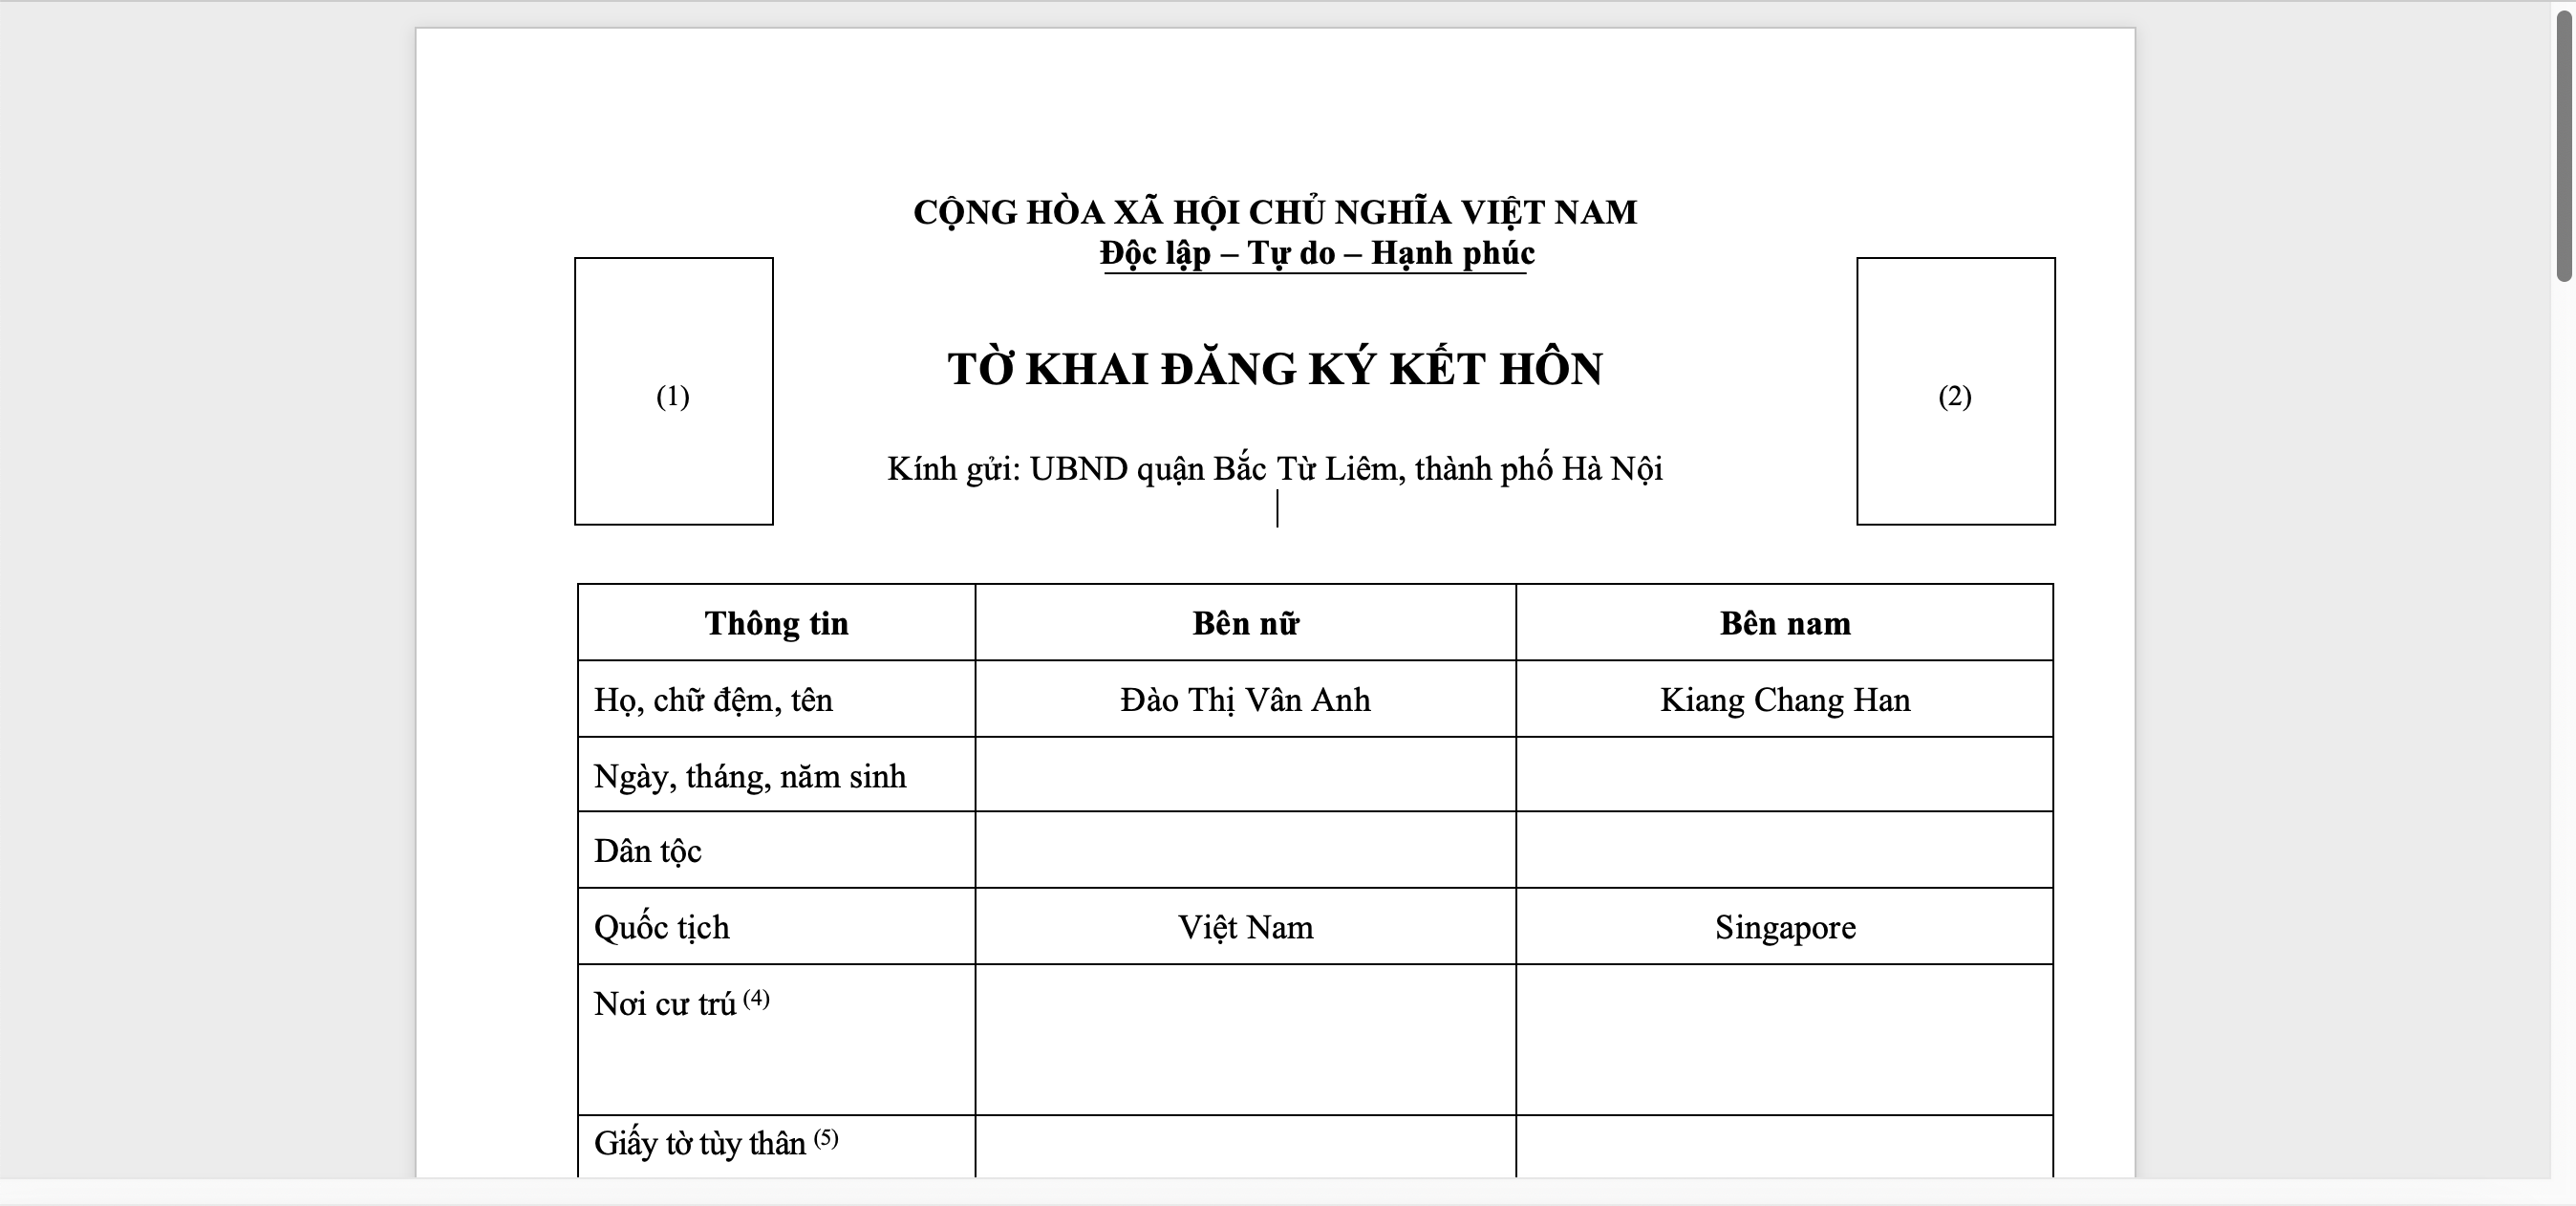 Tờ khai đăng ký kết hôn với người Singapore tại cơ quan có thẩm quyền của Việt Nam